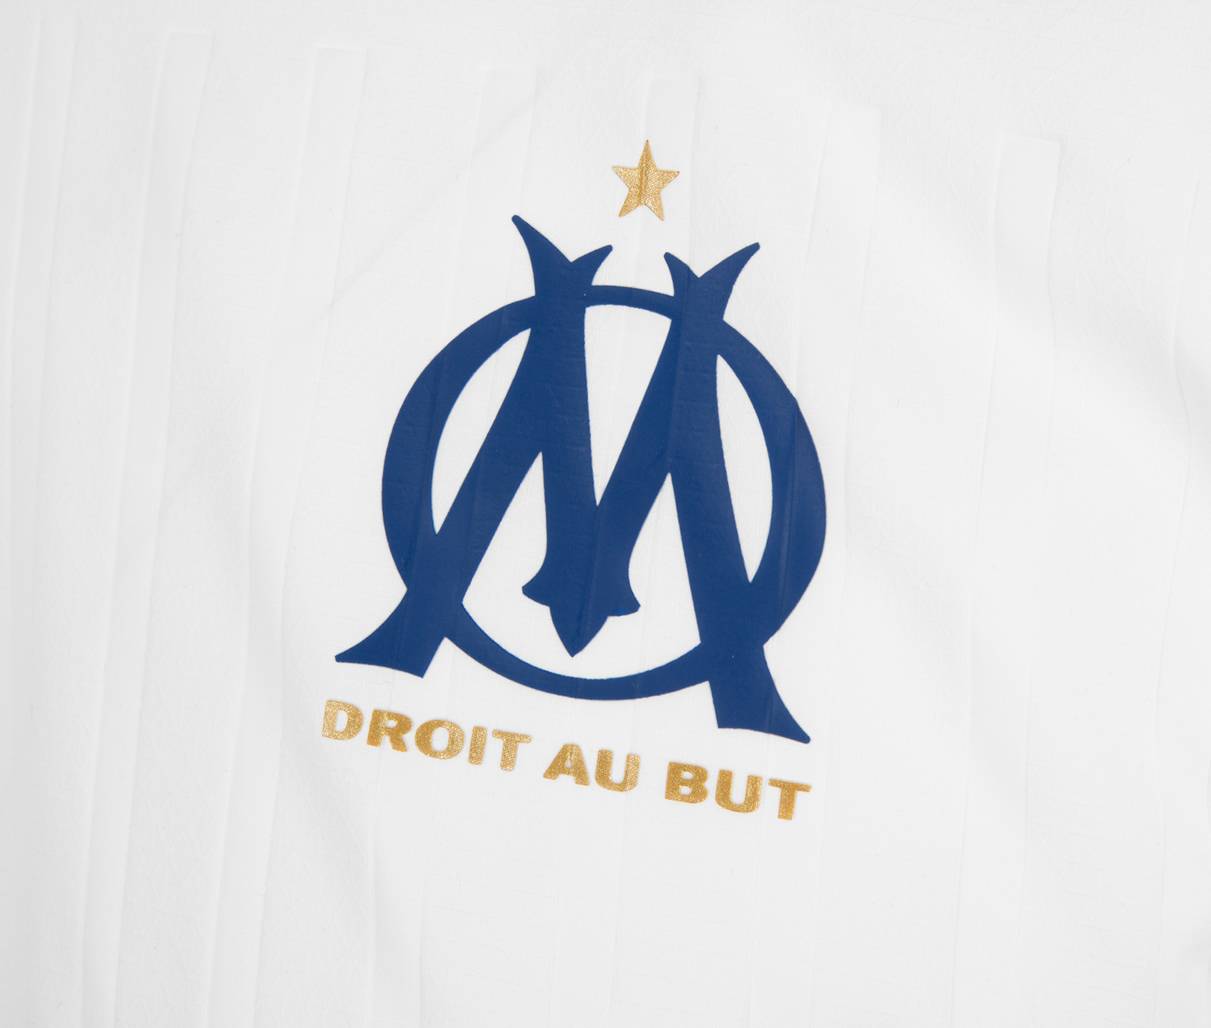 Camiseta Puma del Olympique de Marsella 2022/2023